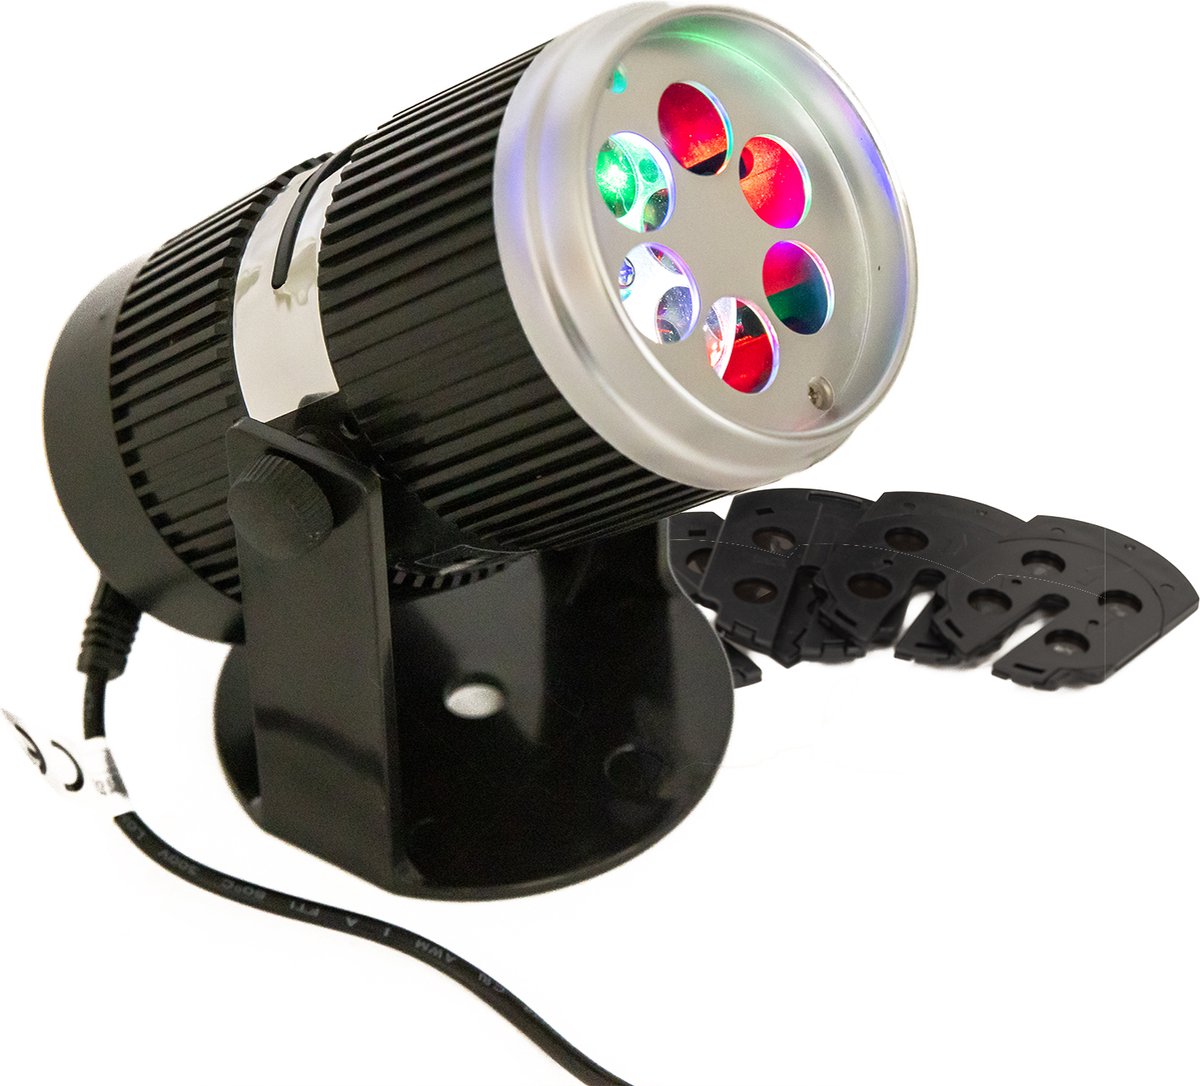 Multic Kerst LED Laser Licht Projector met ingebouwde Patroonkaart -  Feestelijke Kerst